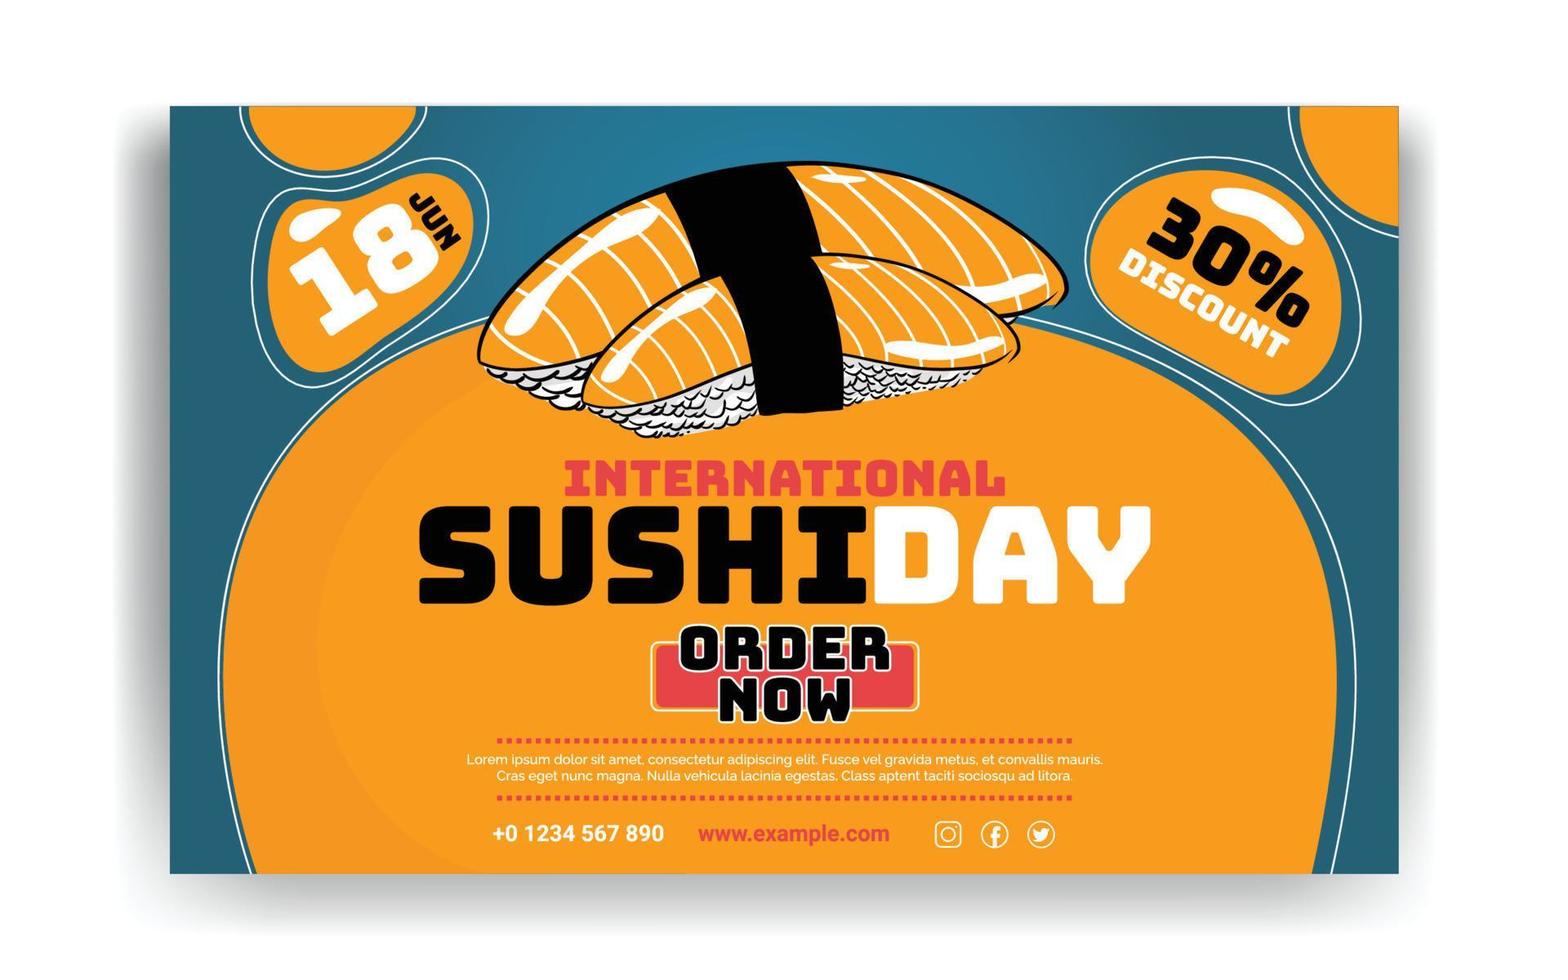 design de banner de sushi de restaurante de comida asiática vetor